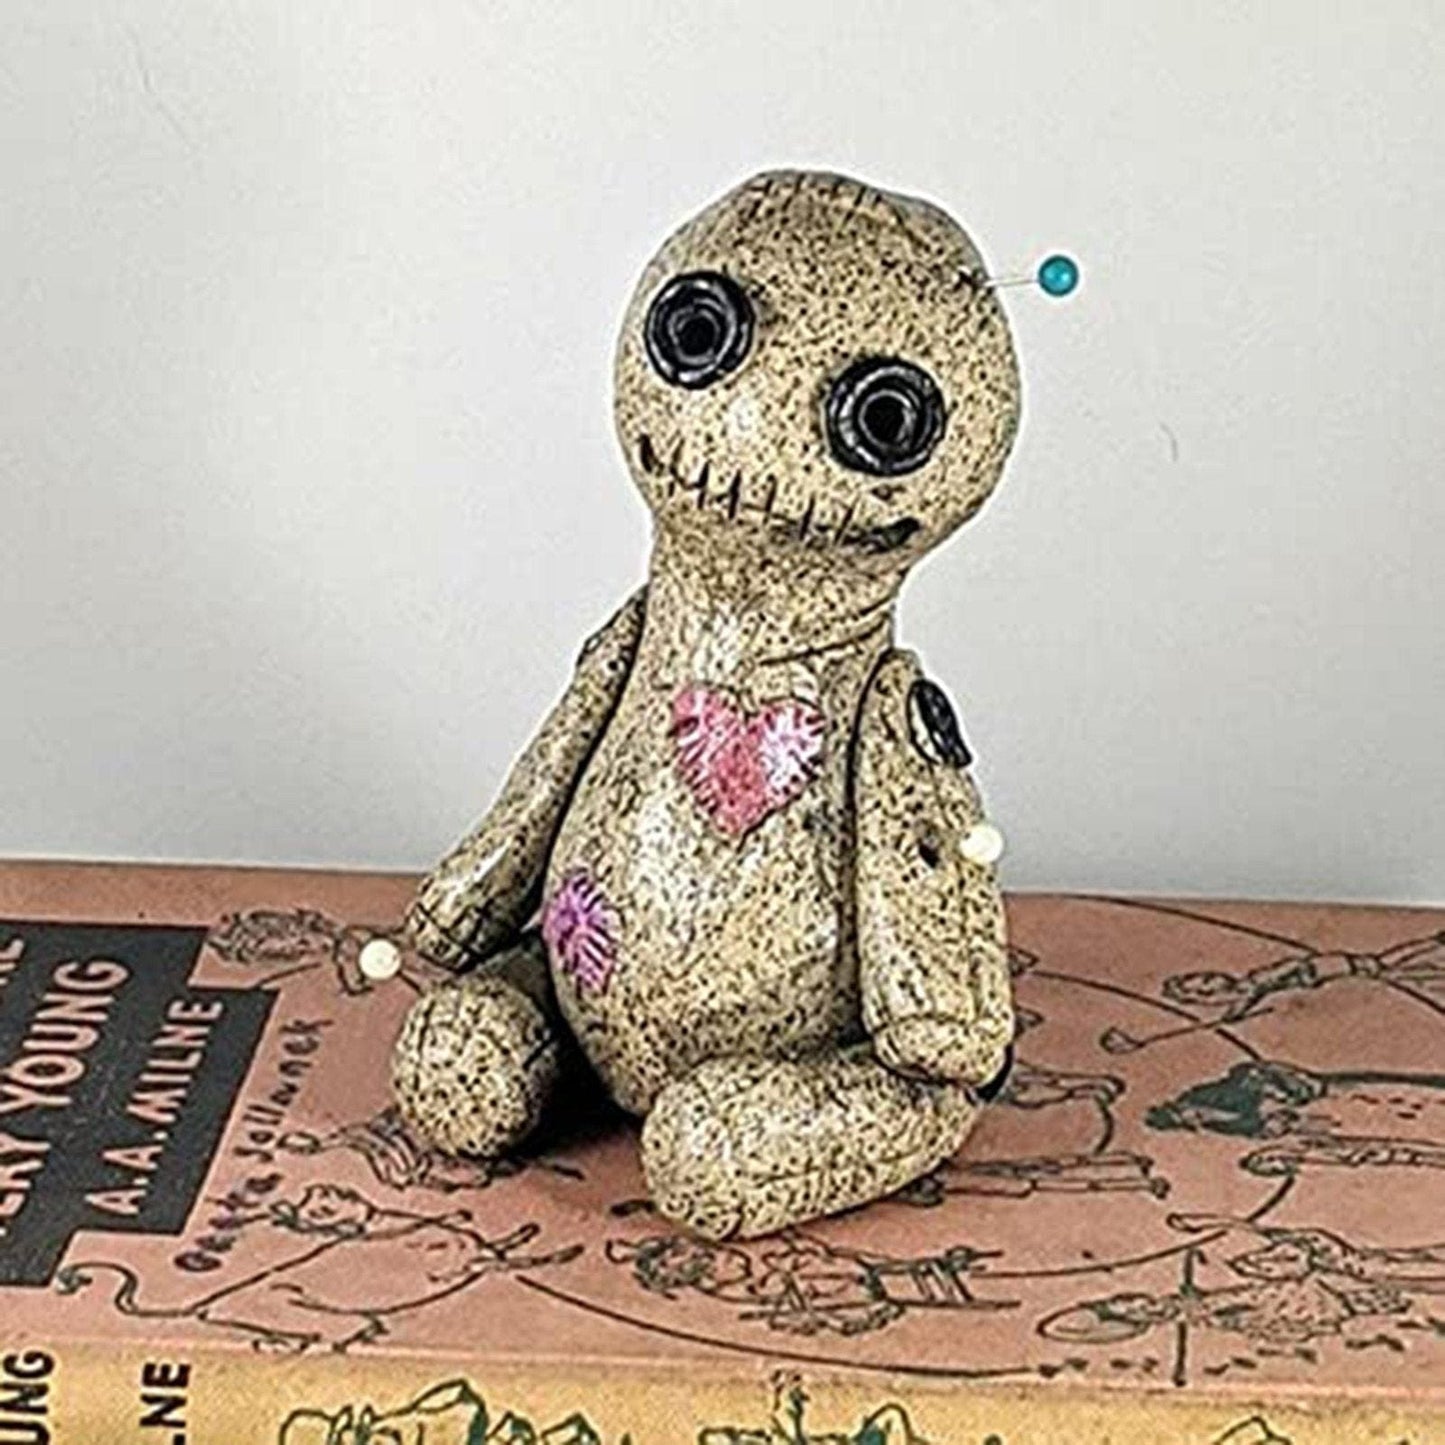 VoodooSense - Insense Burner Voodoo Doll